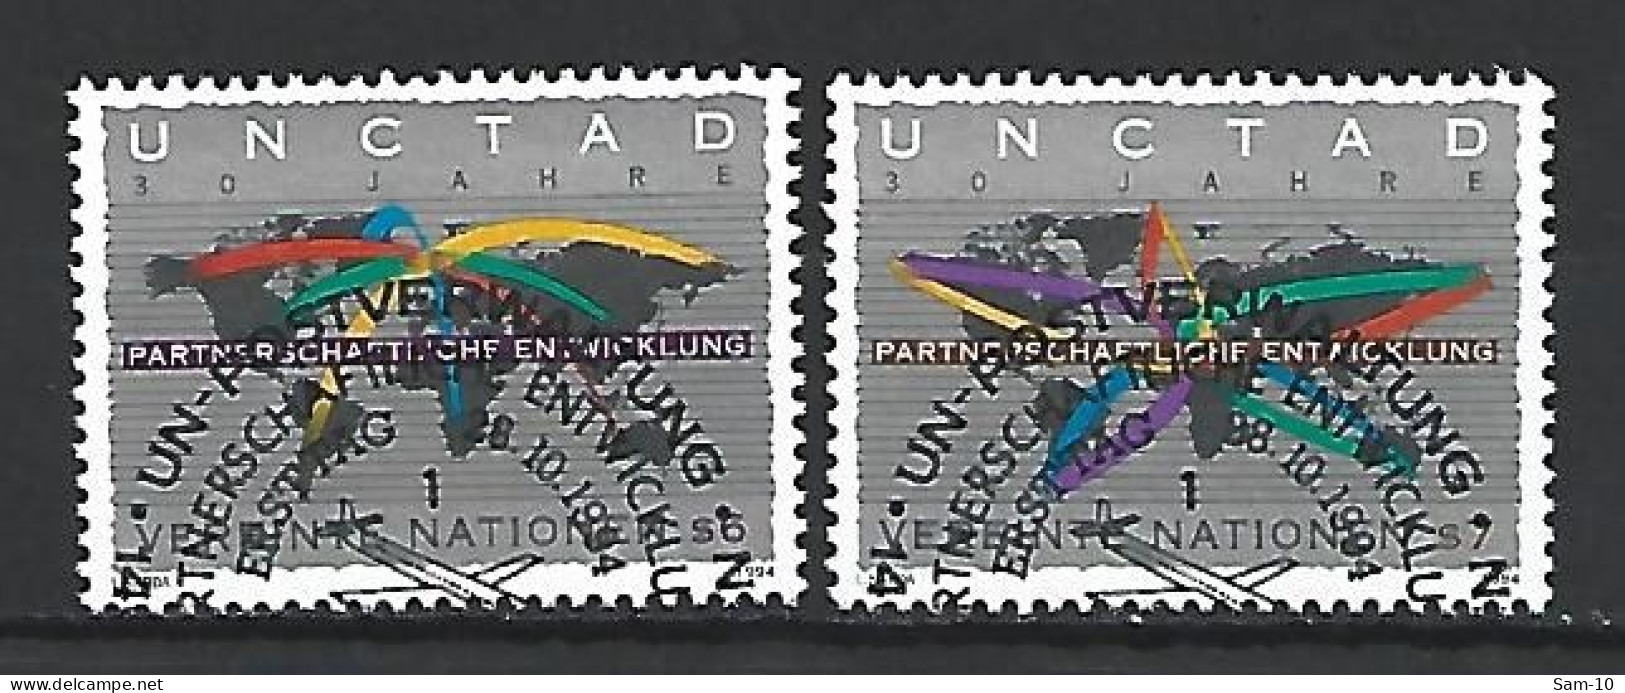 Timbres Nations-Unies Vienne Oblitéré N 196 / 197 - Usati